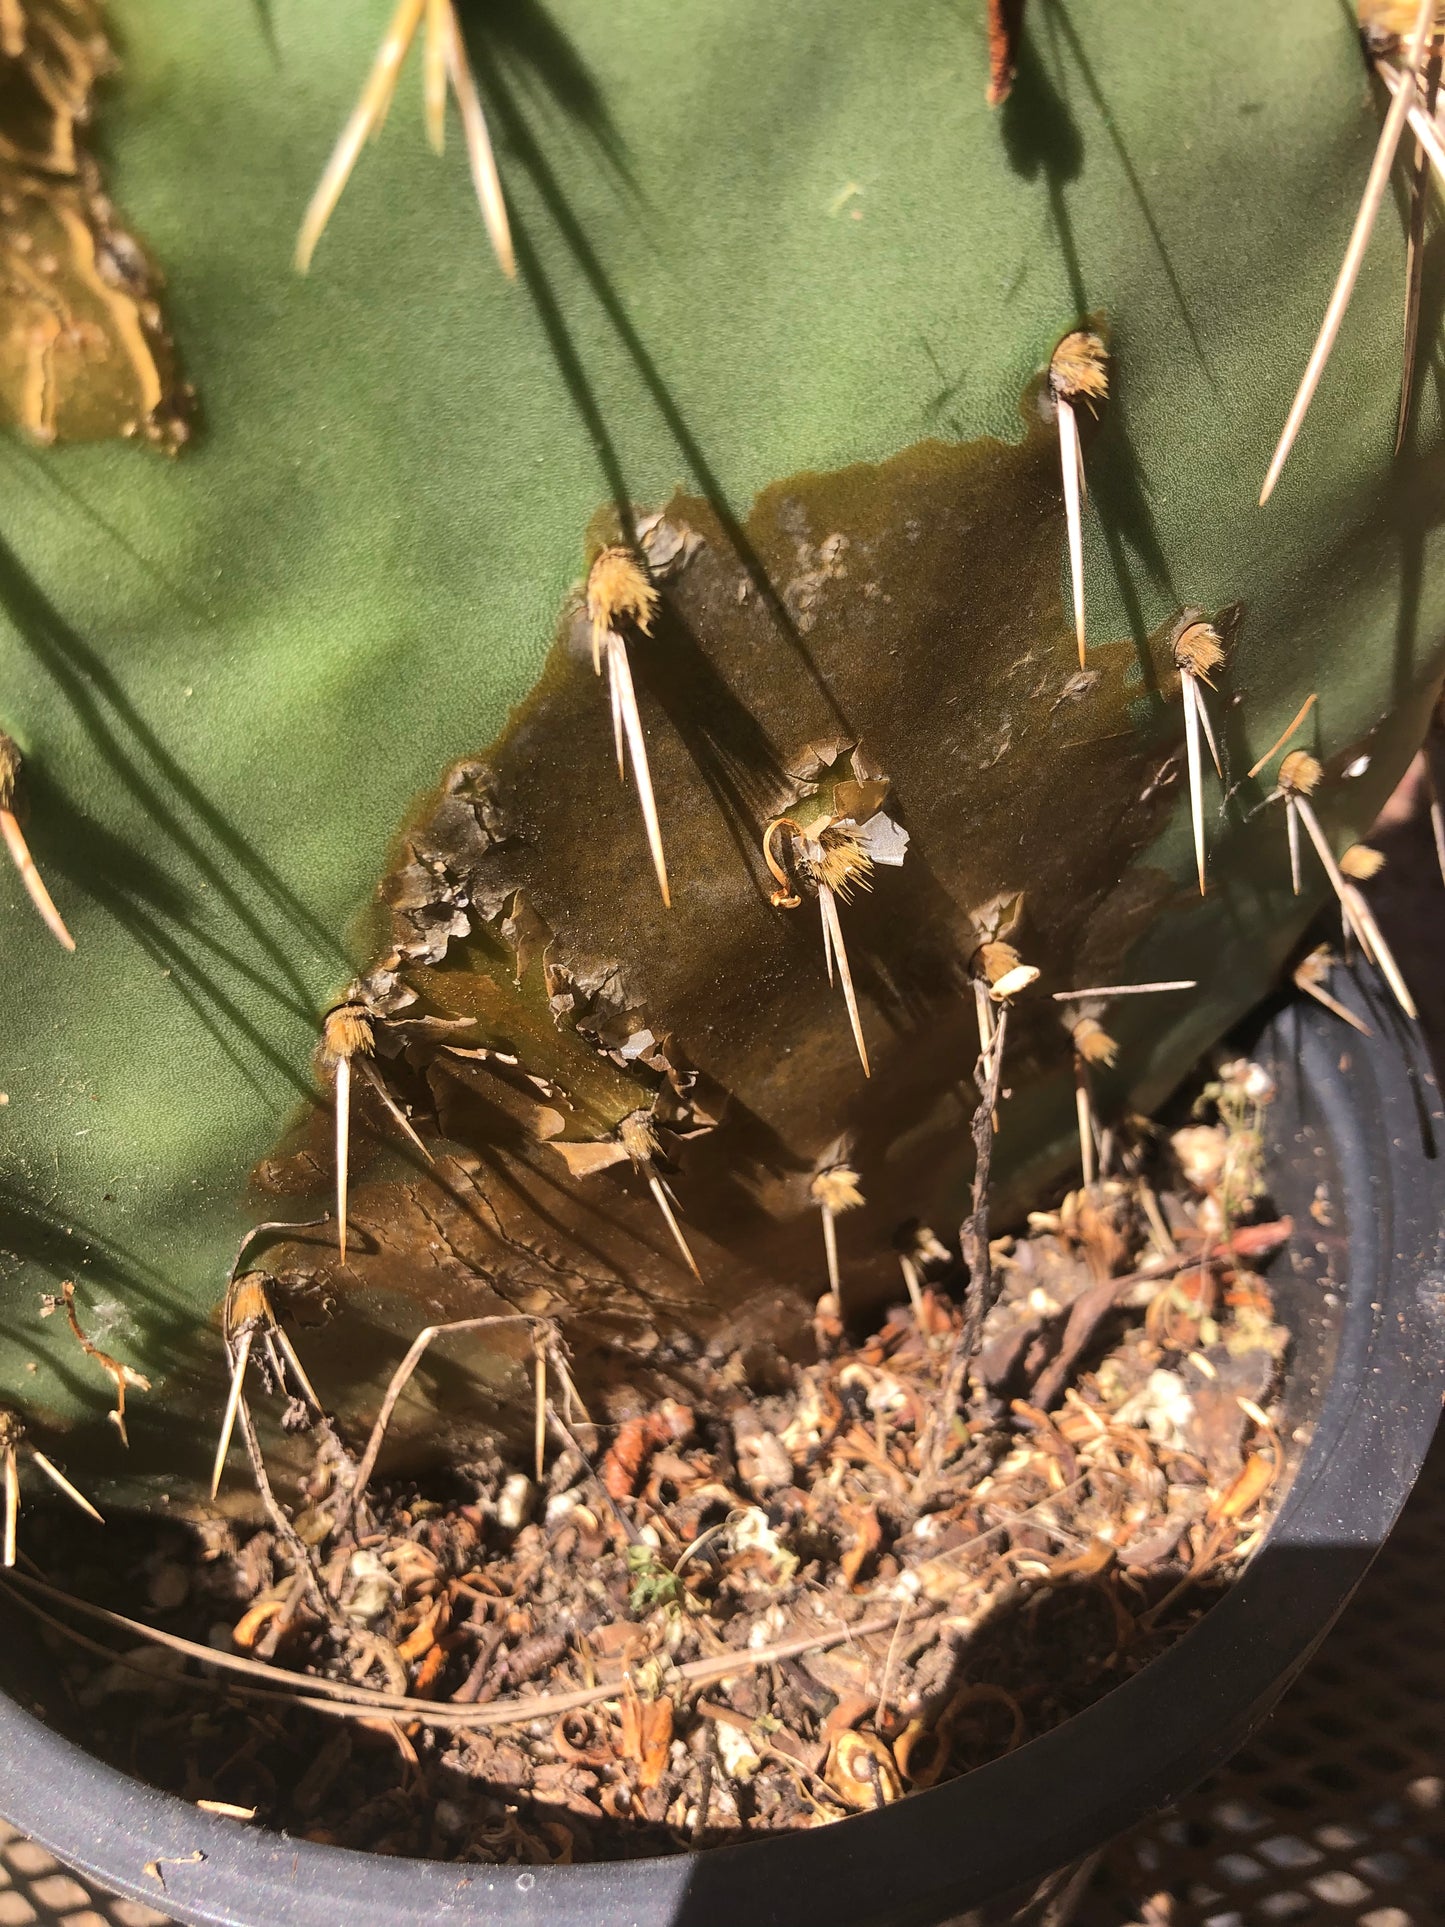 Opuntia engelmannii "Texas Prickly Pear" 23"Tall 8"Wide #238Y